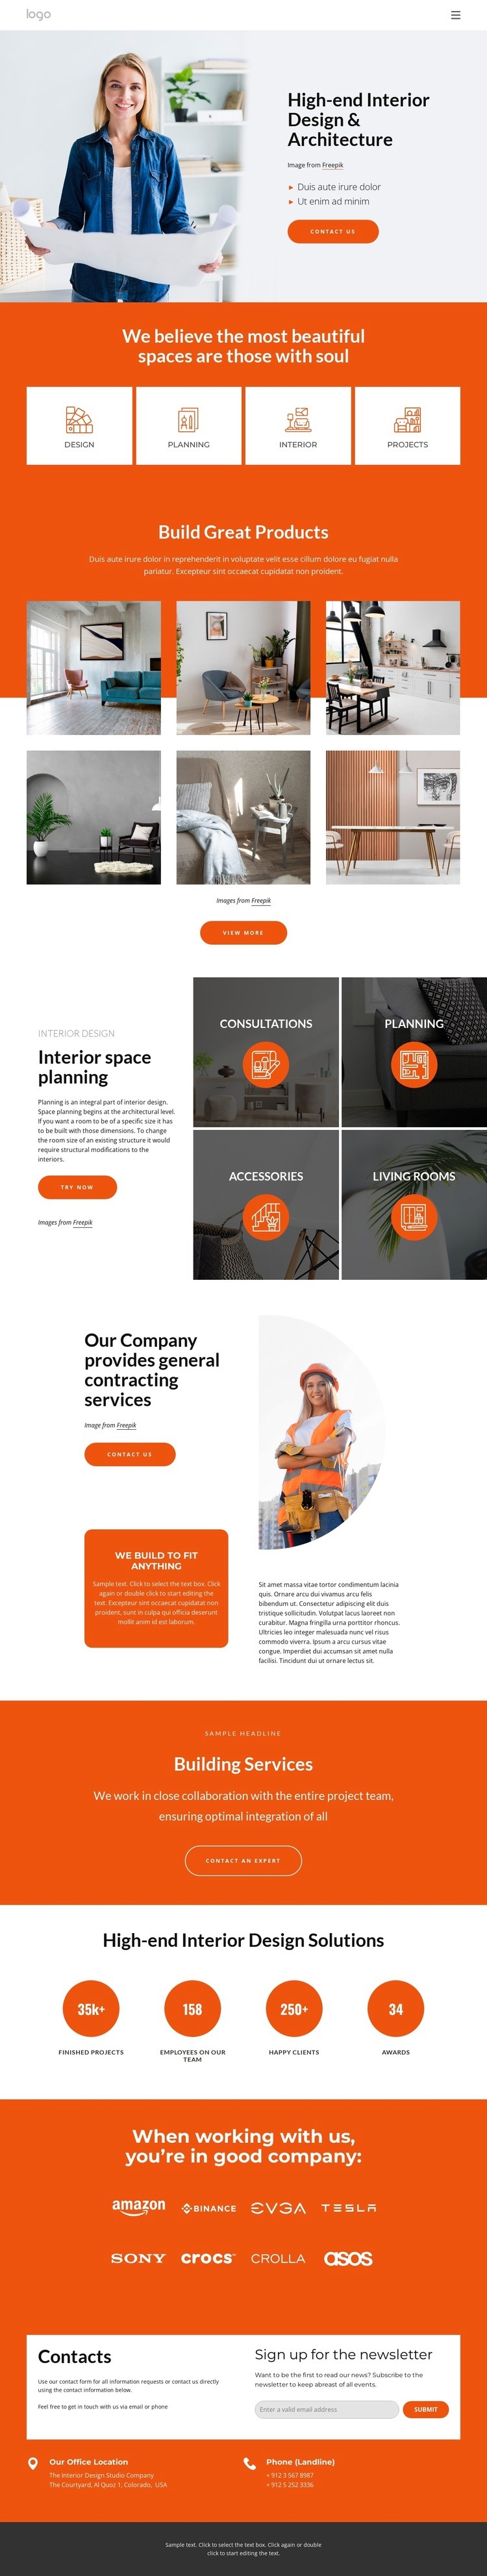 Interior design and architecture studio Web Page Design